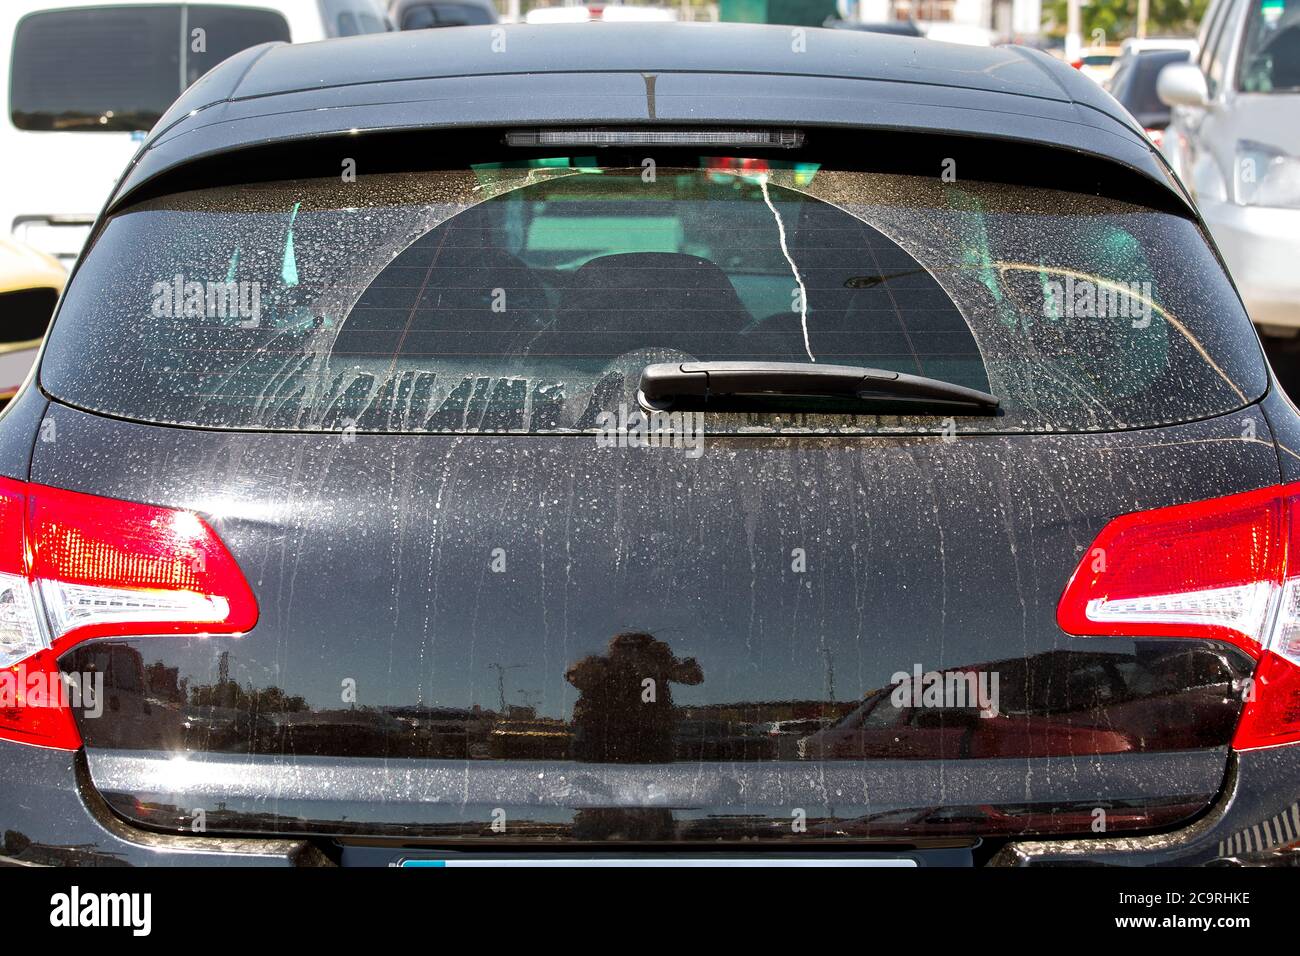 Schmutzige Heckscheibe des schwarzen Auto- und Kofferraumdeckels, die  Heckansicht des Fahrzeugs verschmutzt im Schlamm Stockfotografie - Alamy